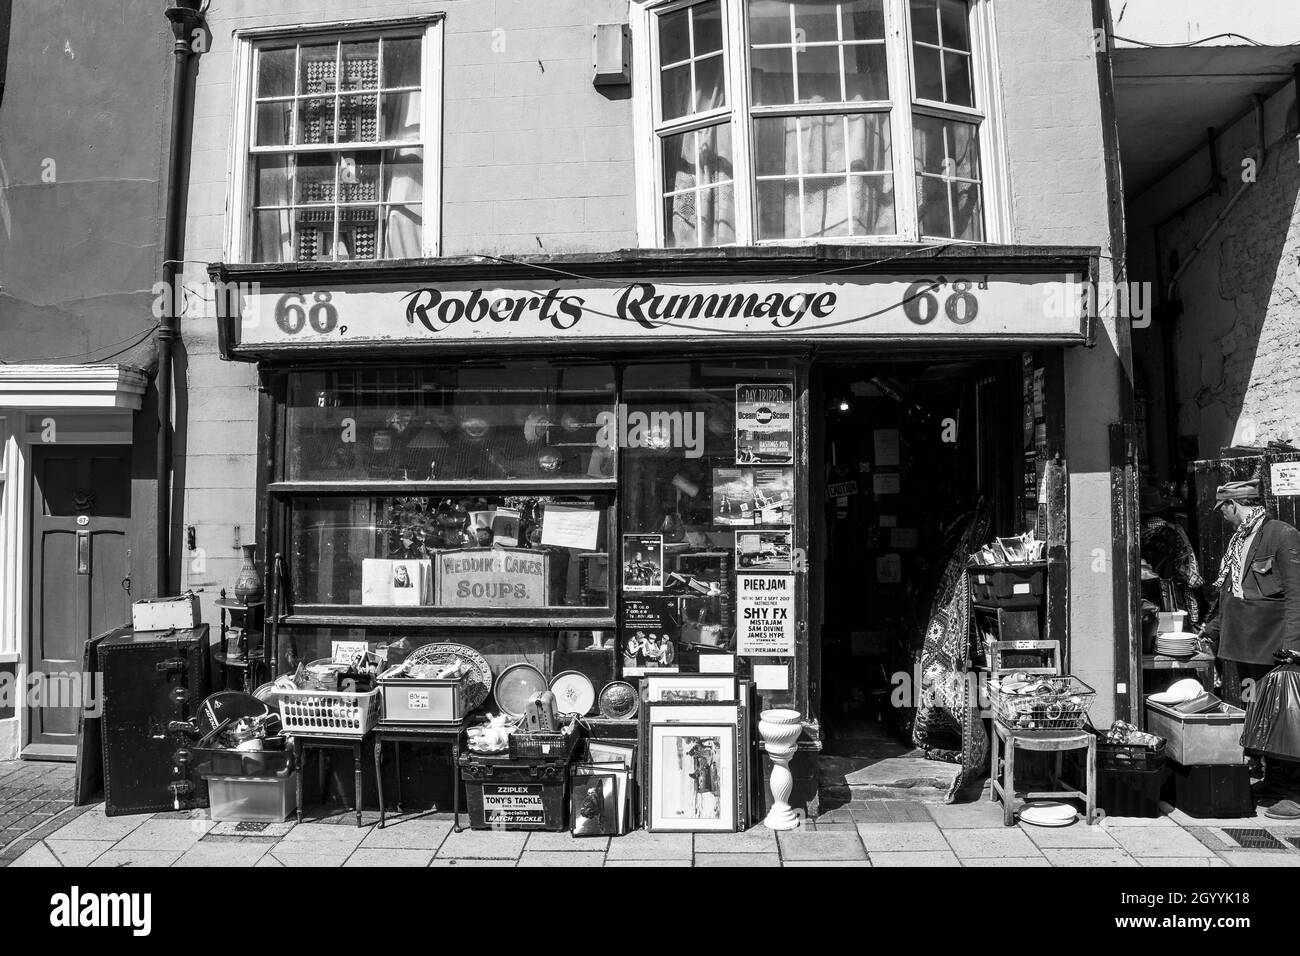 Es scheint, dass bei Roberts Rommage alles zum Verkauf steht. In der Altstadt von Hastings gibt es ein wunderbares kleines Geschäft mit Köstlichkeiten Stockfoto